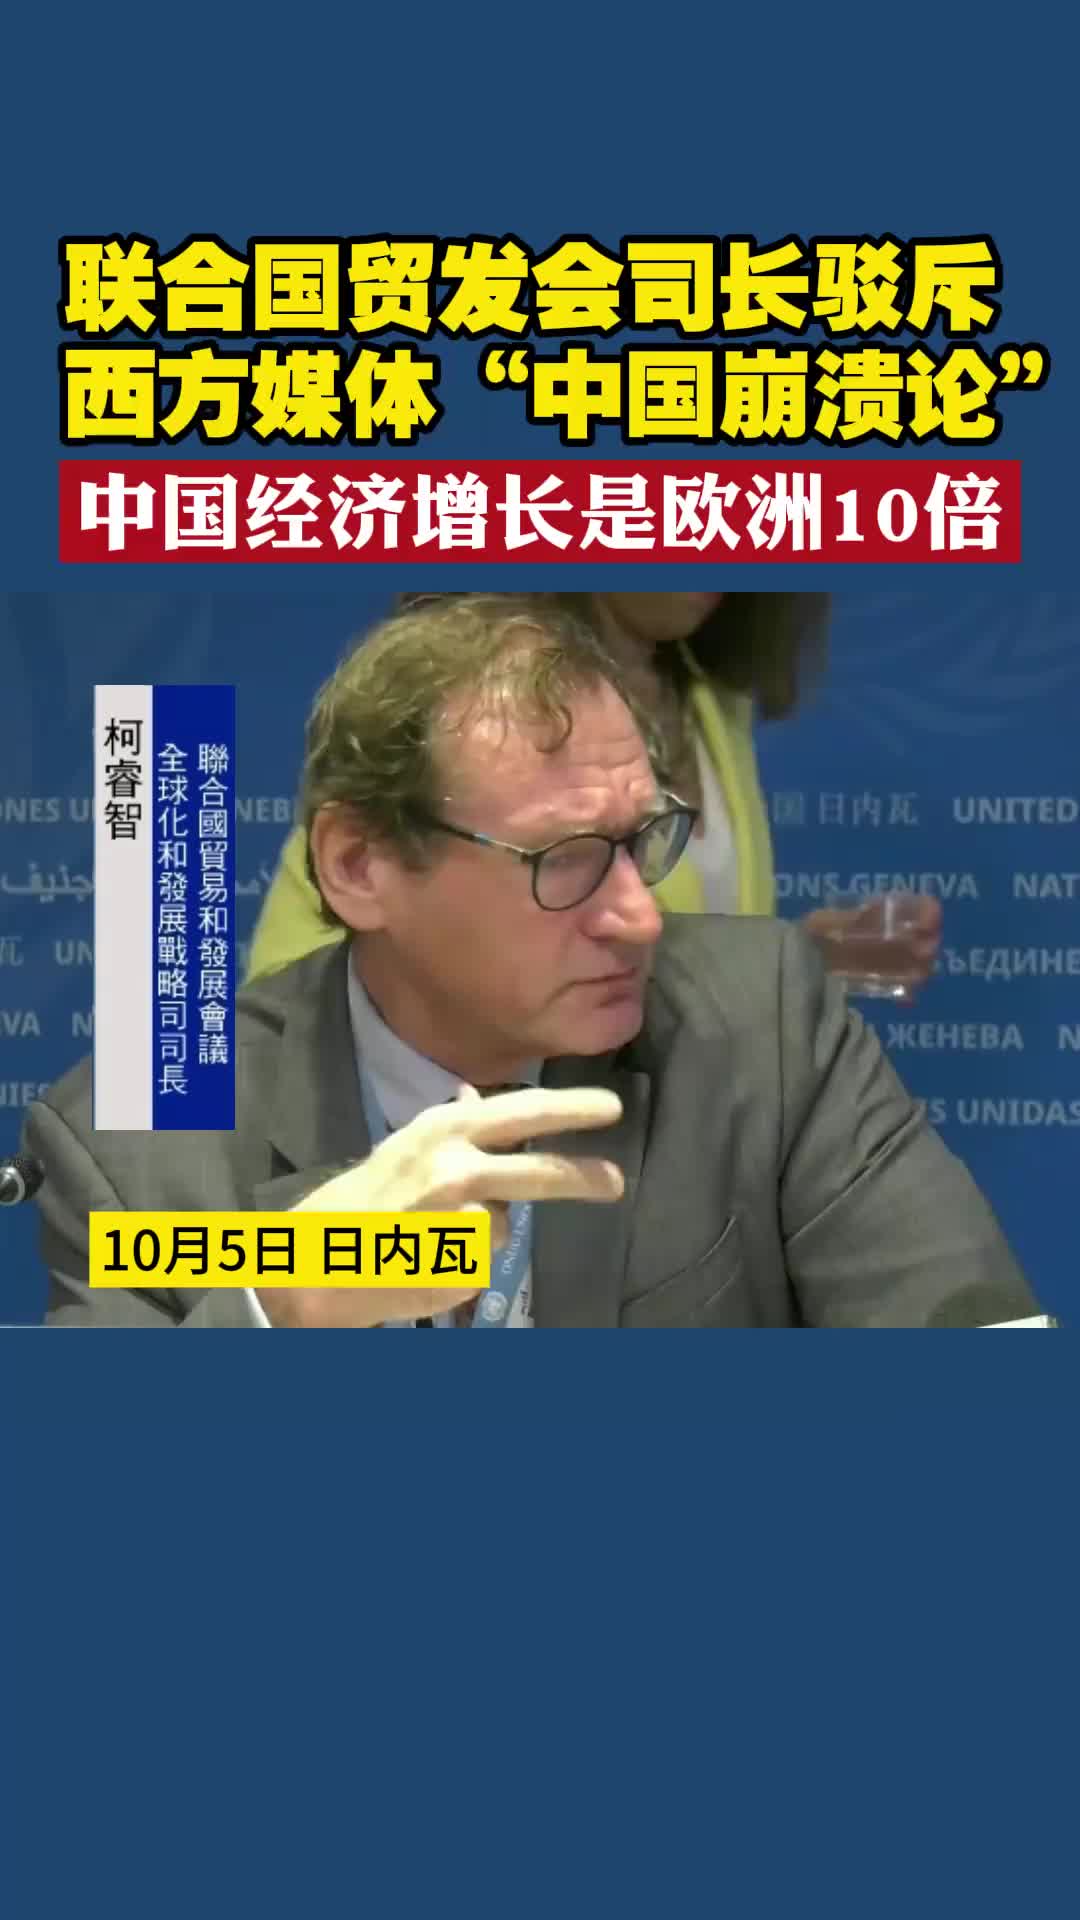 联合国贸发会司长驳斥西方媒体“中国崩溃论” 中国经济增长是欧洲10倍